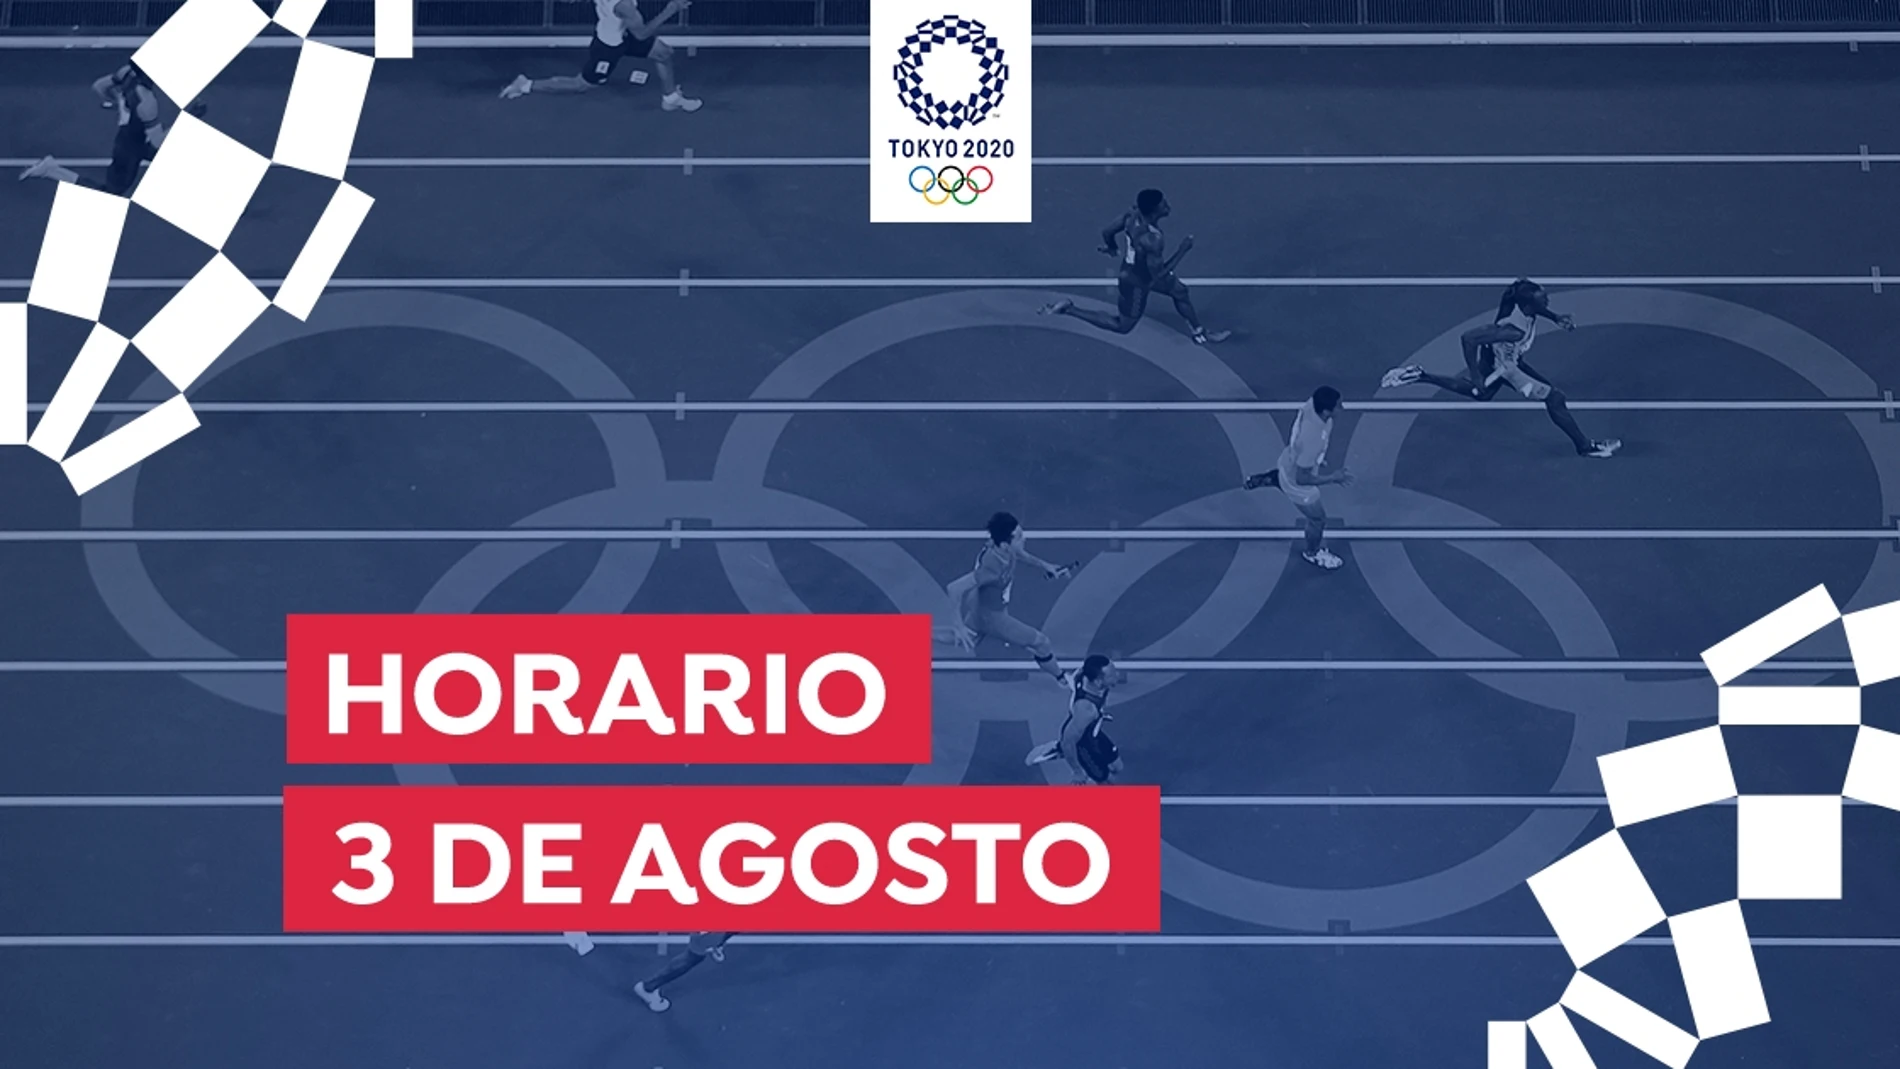 Juegos Olímpicos de Tokio 2020: Horario y dónde ver las competiciones de hoy martes 3 de agosto desde España